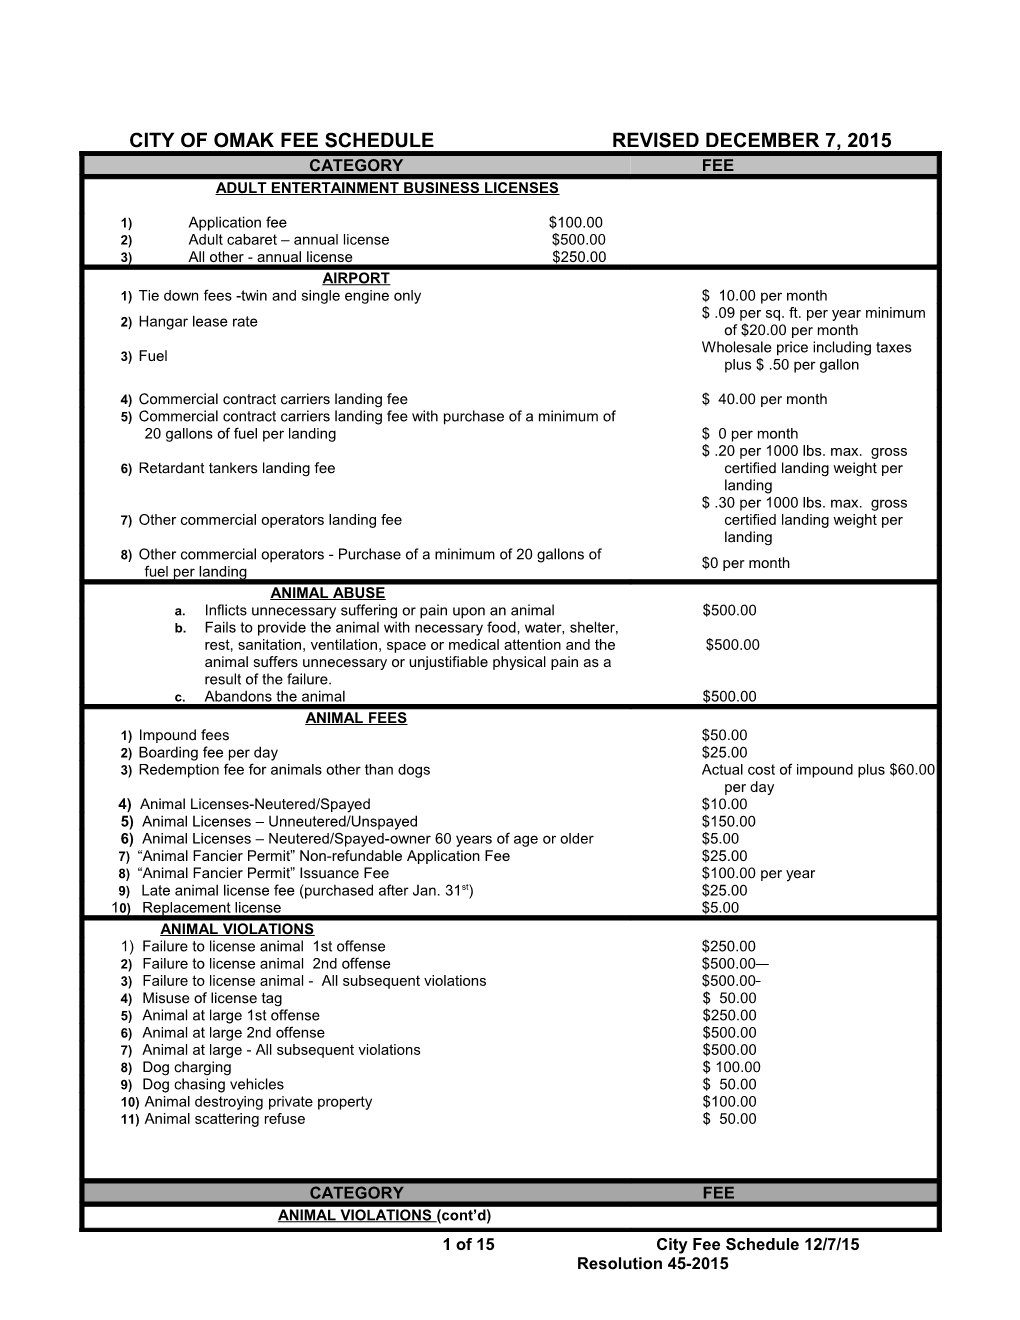 City of Omak Fee Schedule Revised December 7, 2015